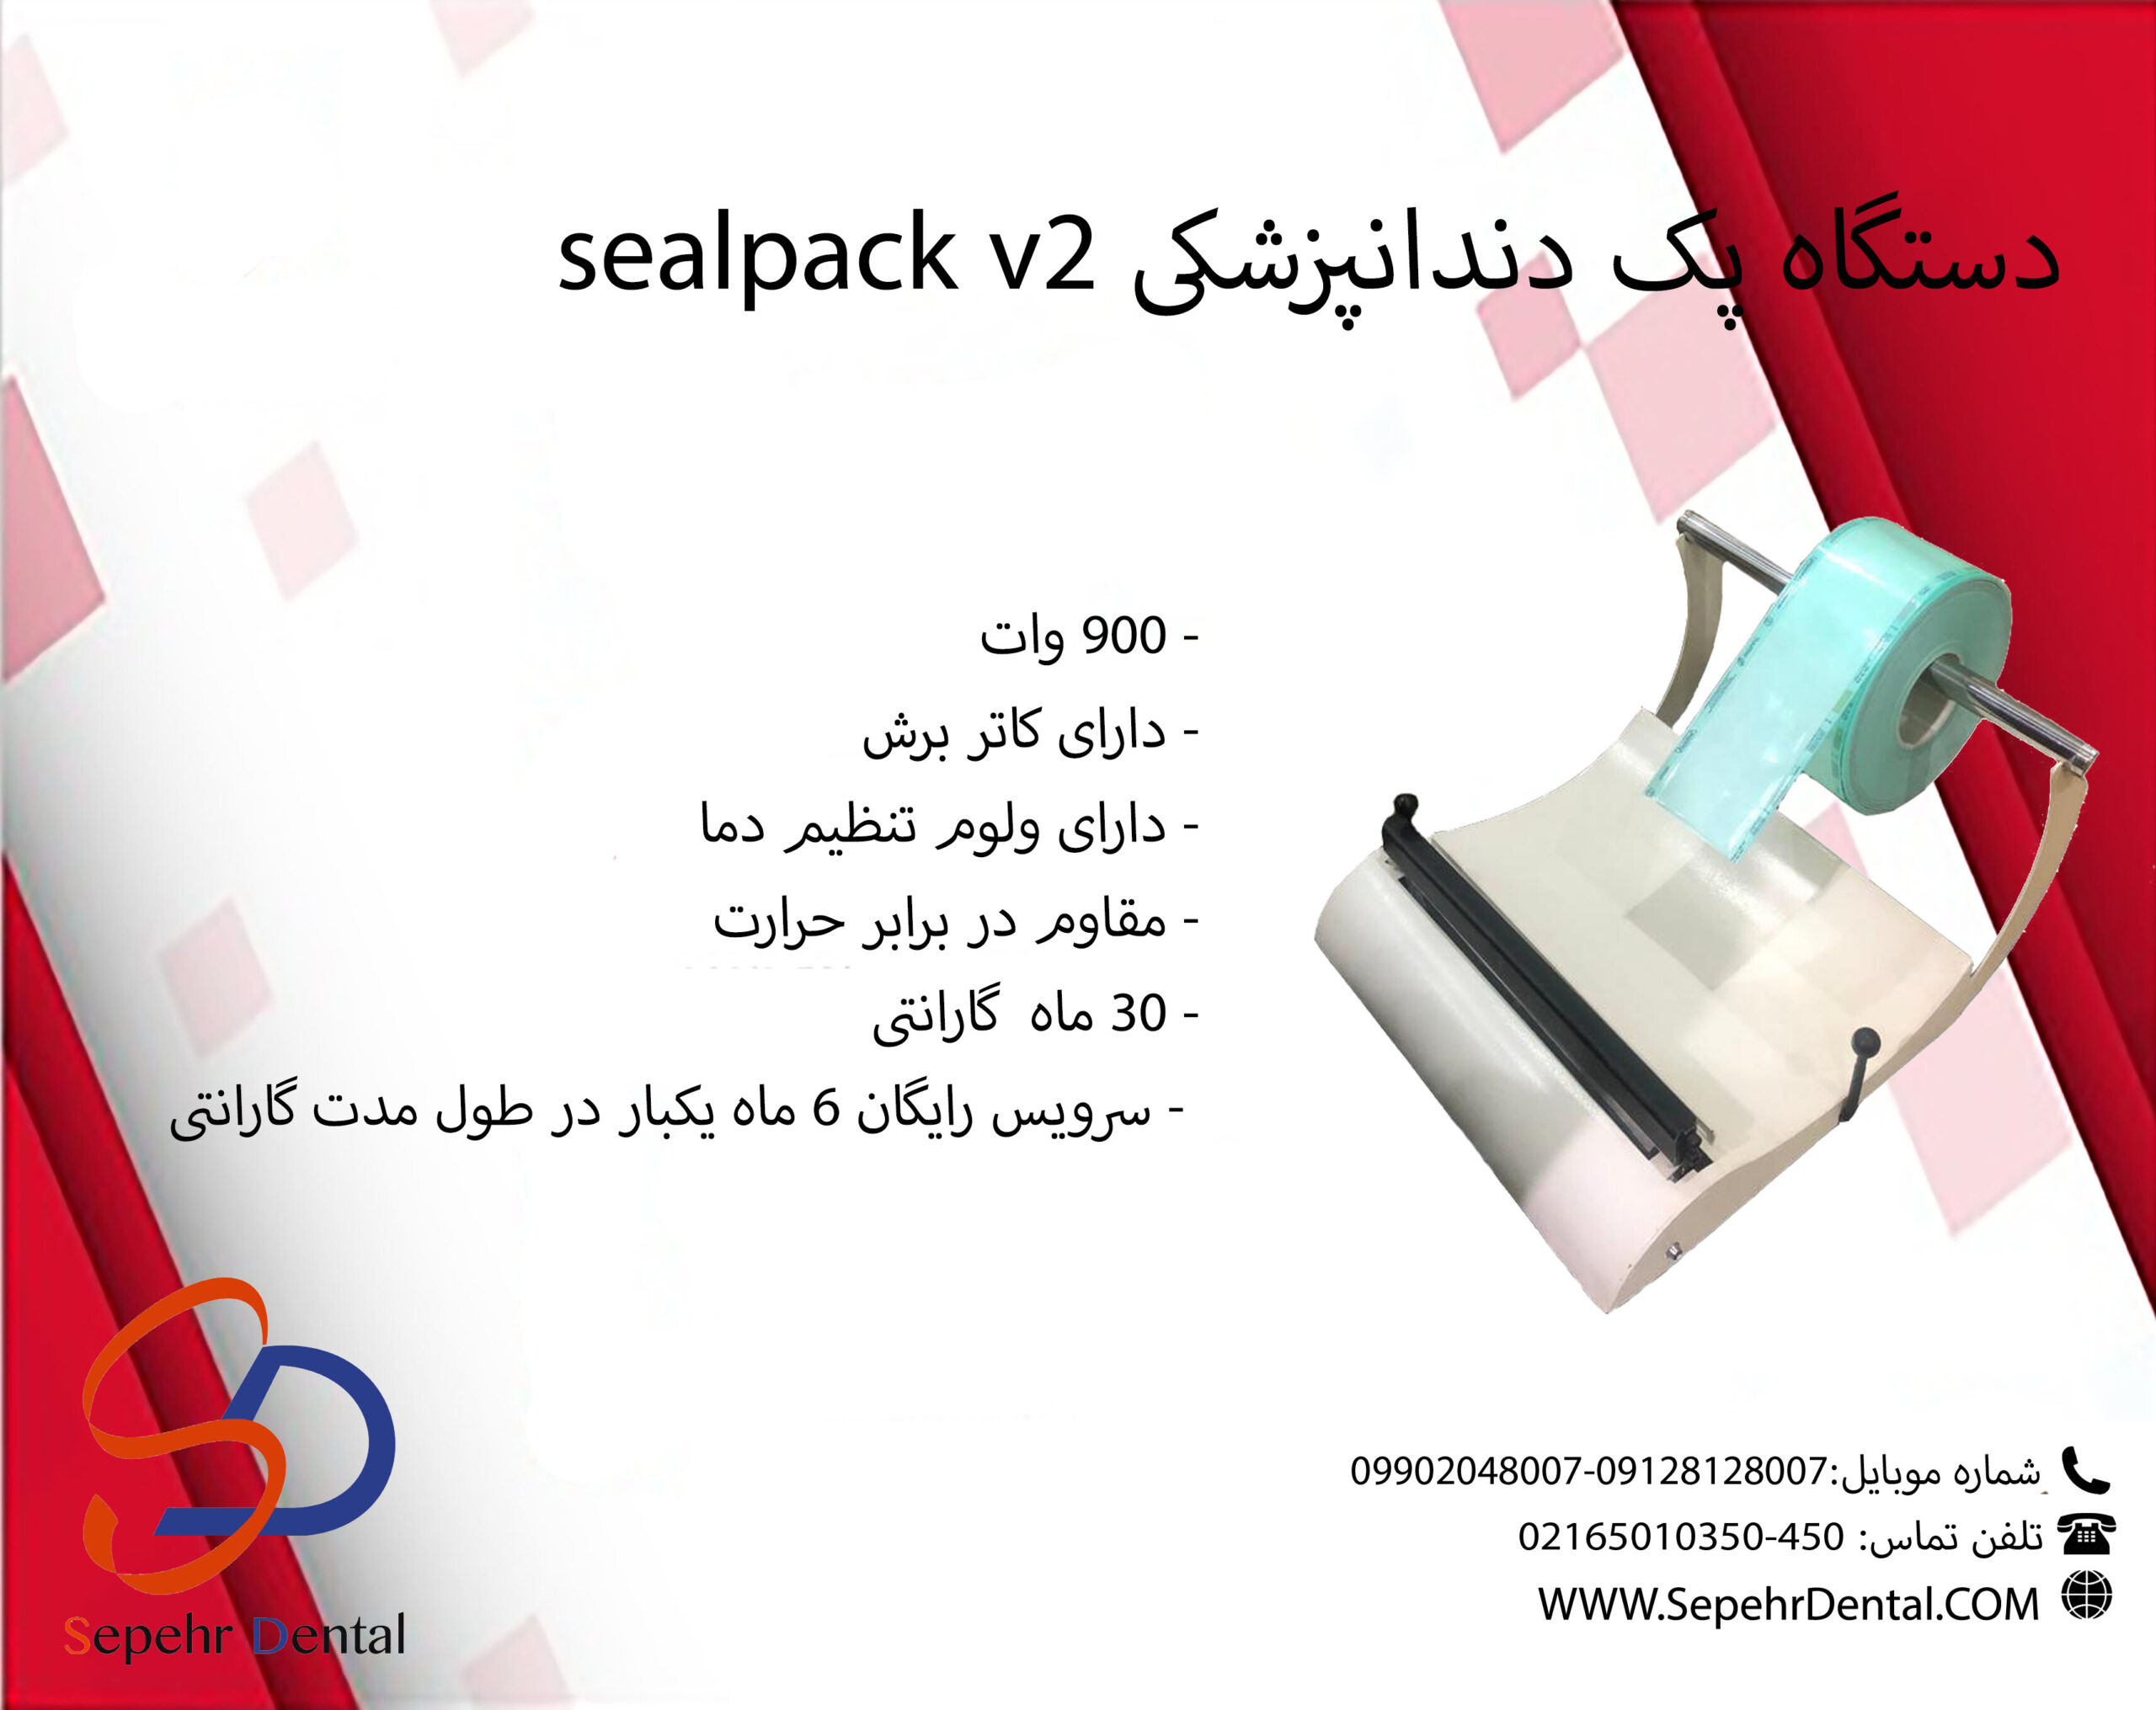 دستگاه پک sealpack v2